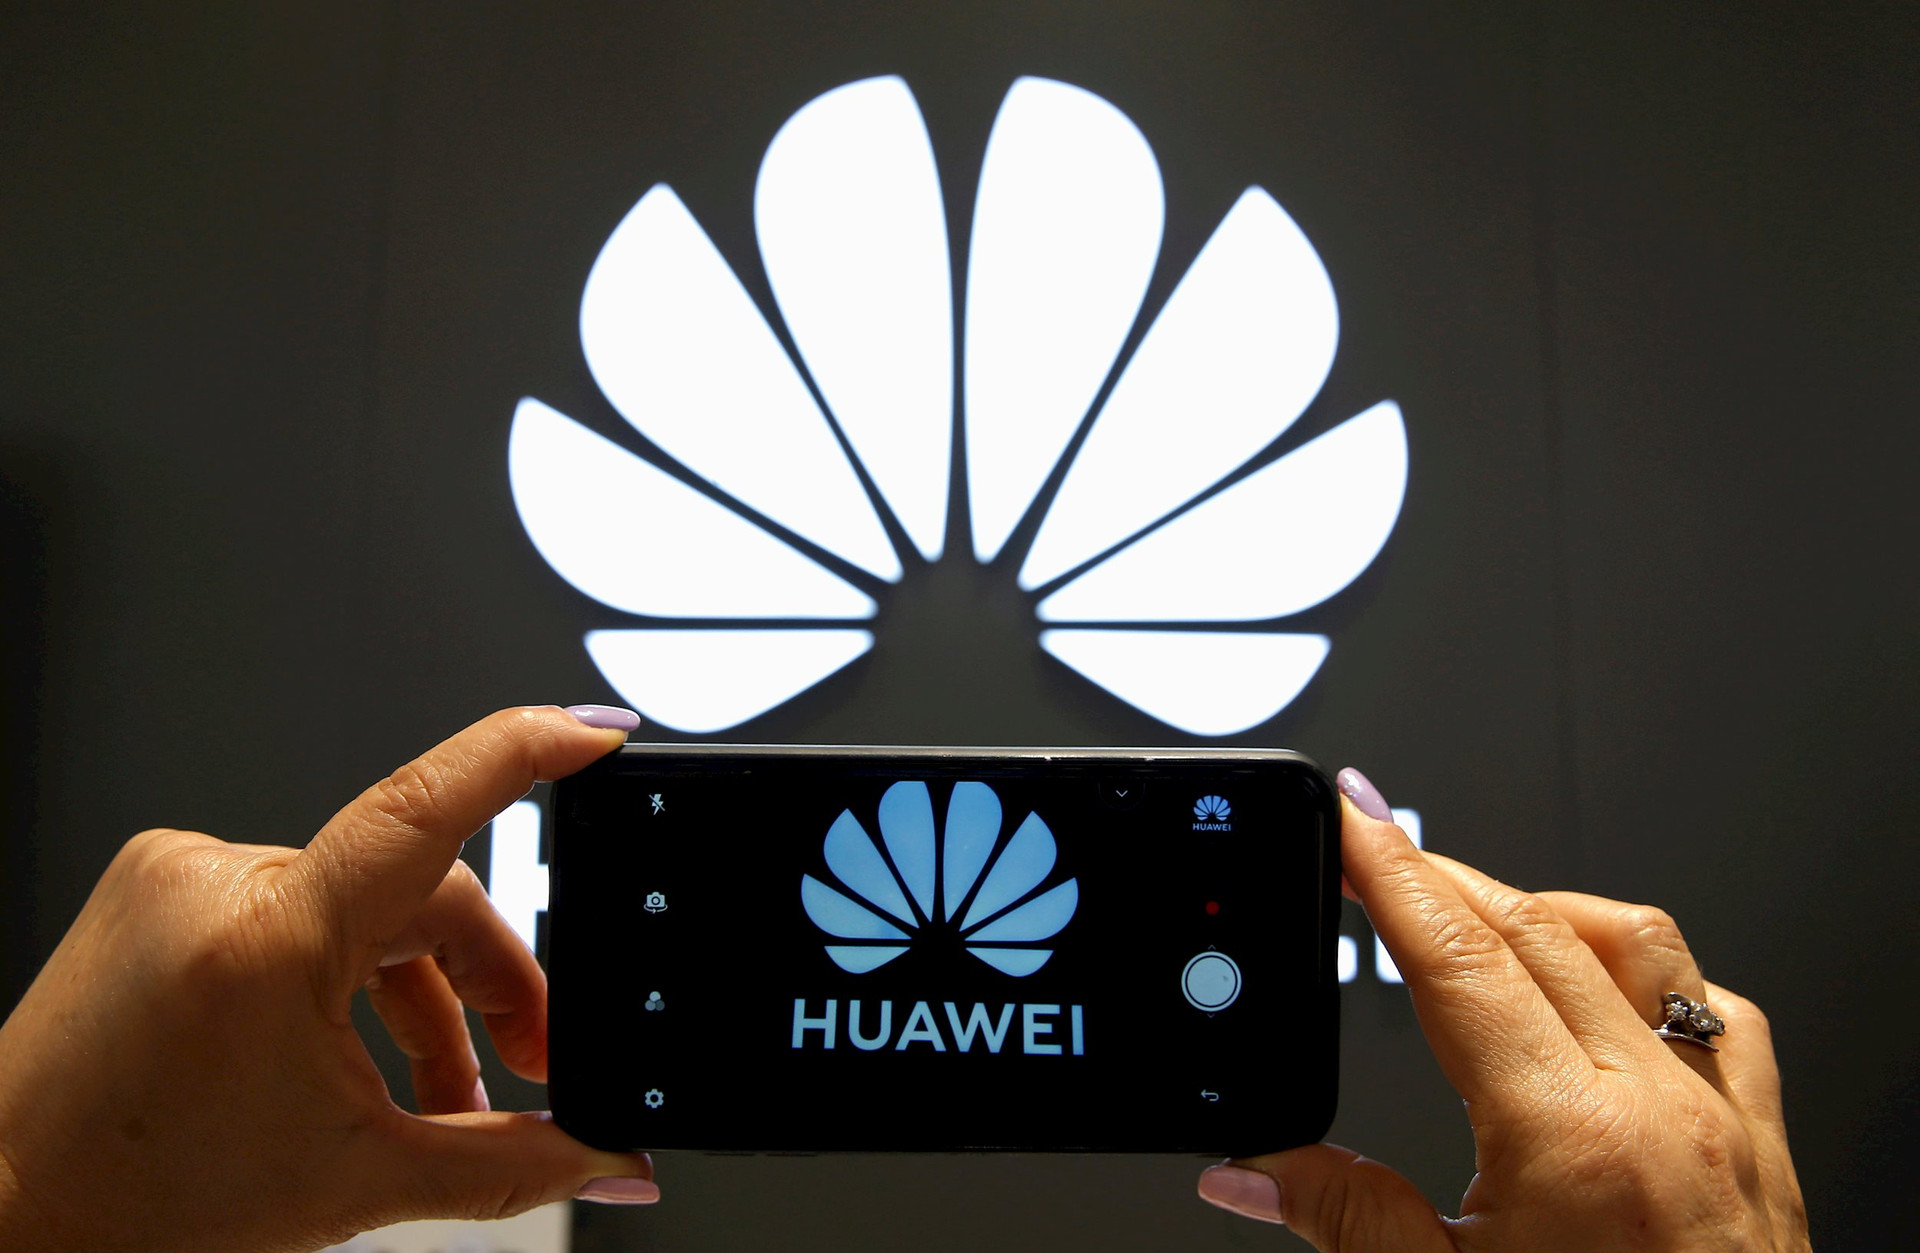 Liệu Huawei có lấy lại được ánh hào quang xưa nhờ sản phẩm smartphone mới? - Ảnh 1.